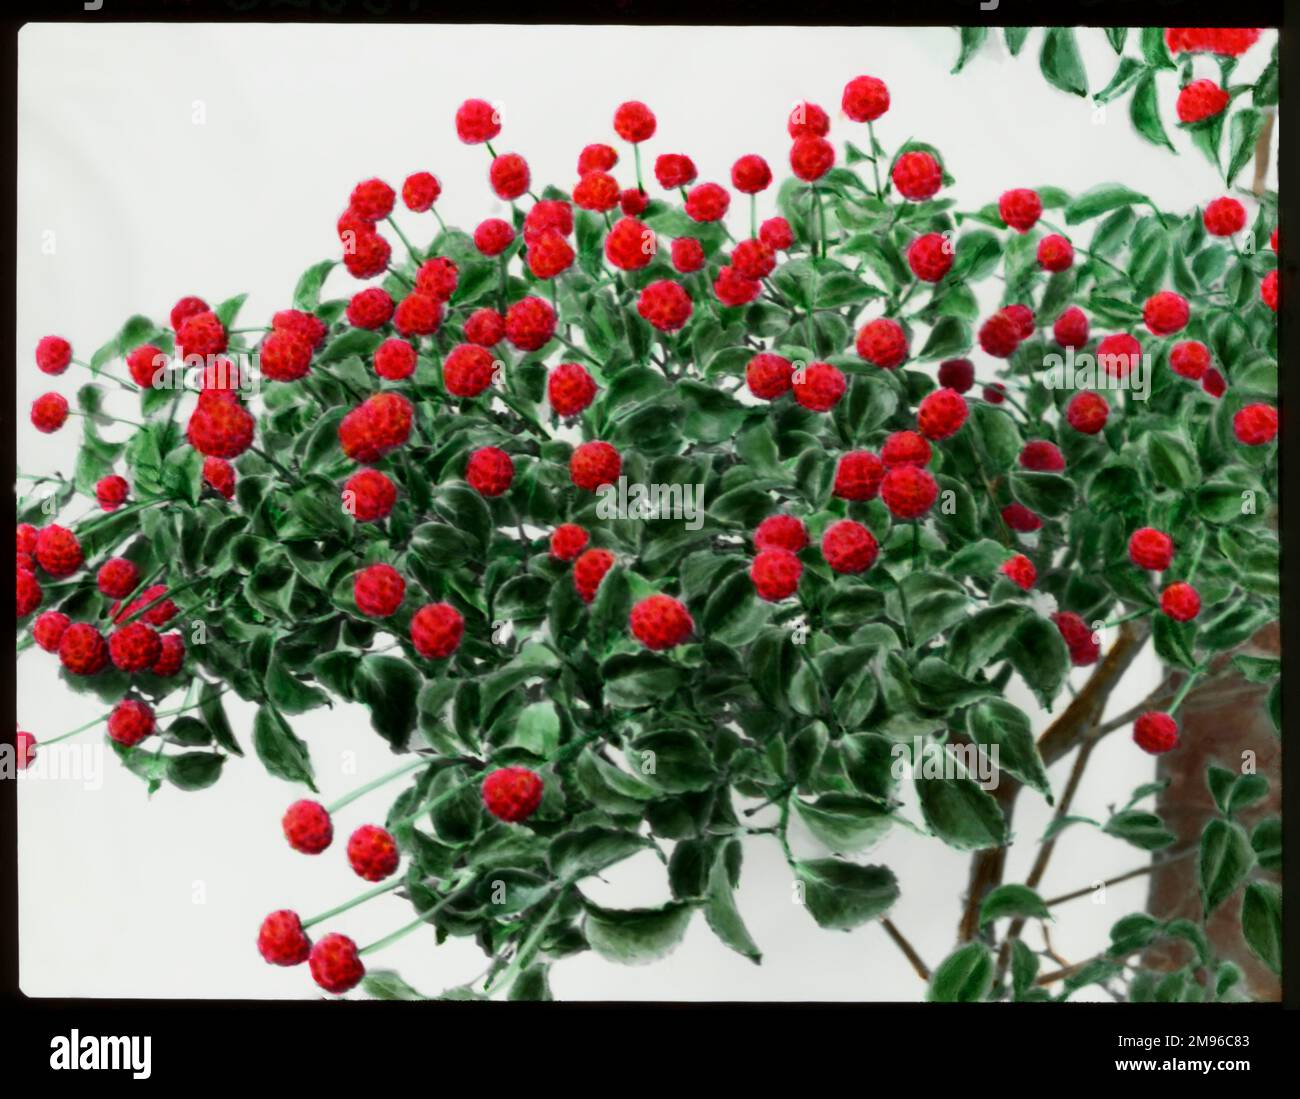 Cornus Kousa ou Benthamidia Kousa (Dogwood à fleurs japonaises), un arbuste ou petit arbre robuste du Japon et de la Corée, de la famille des Cornacées. Vu ici portant des baies rouges brillantes, qui sont comestibles. Banque D'Images